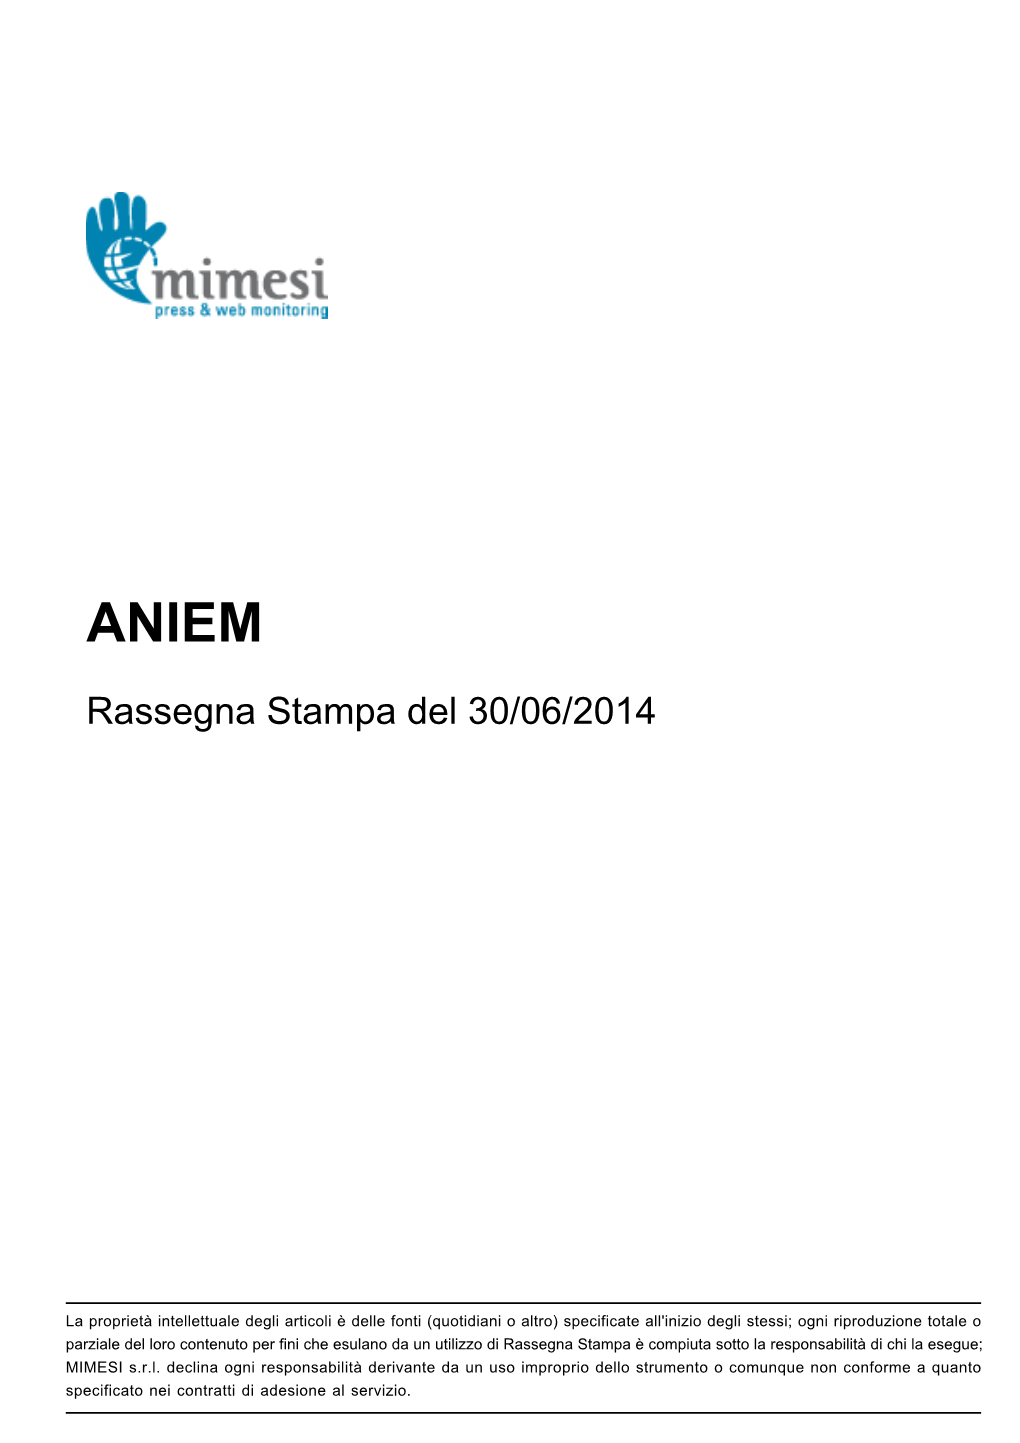 Rassegna Stampa Del 30/06/2014